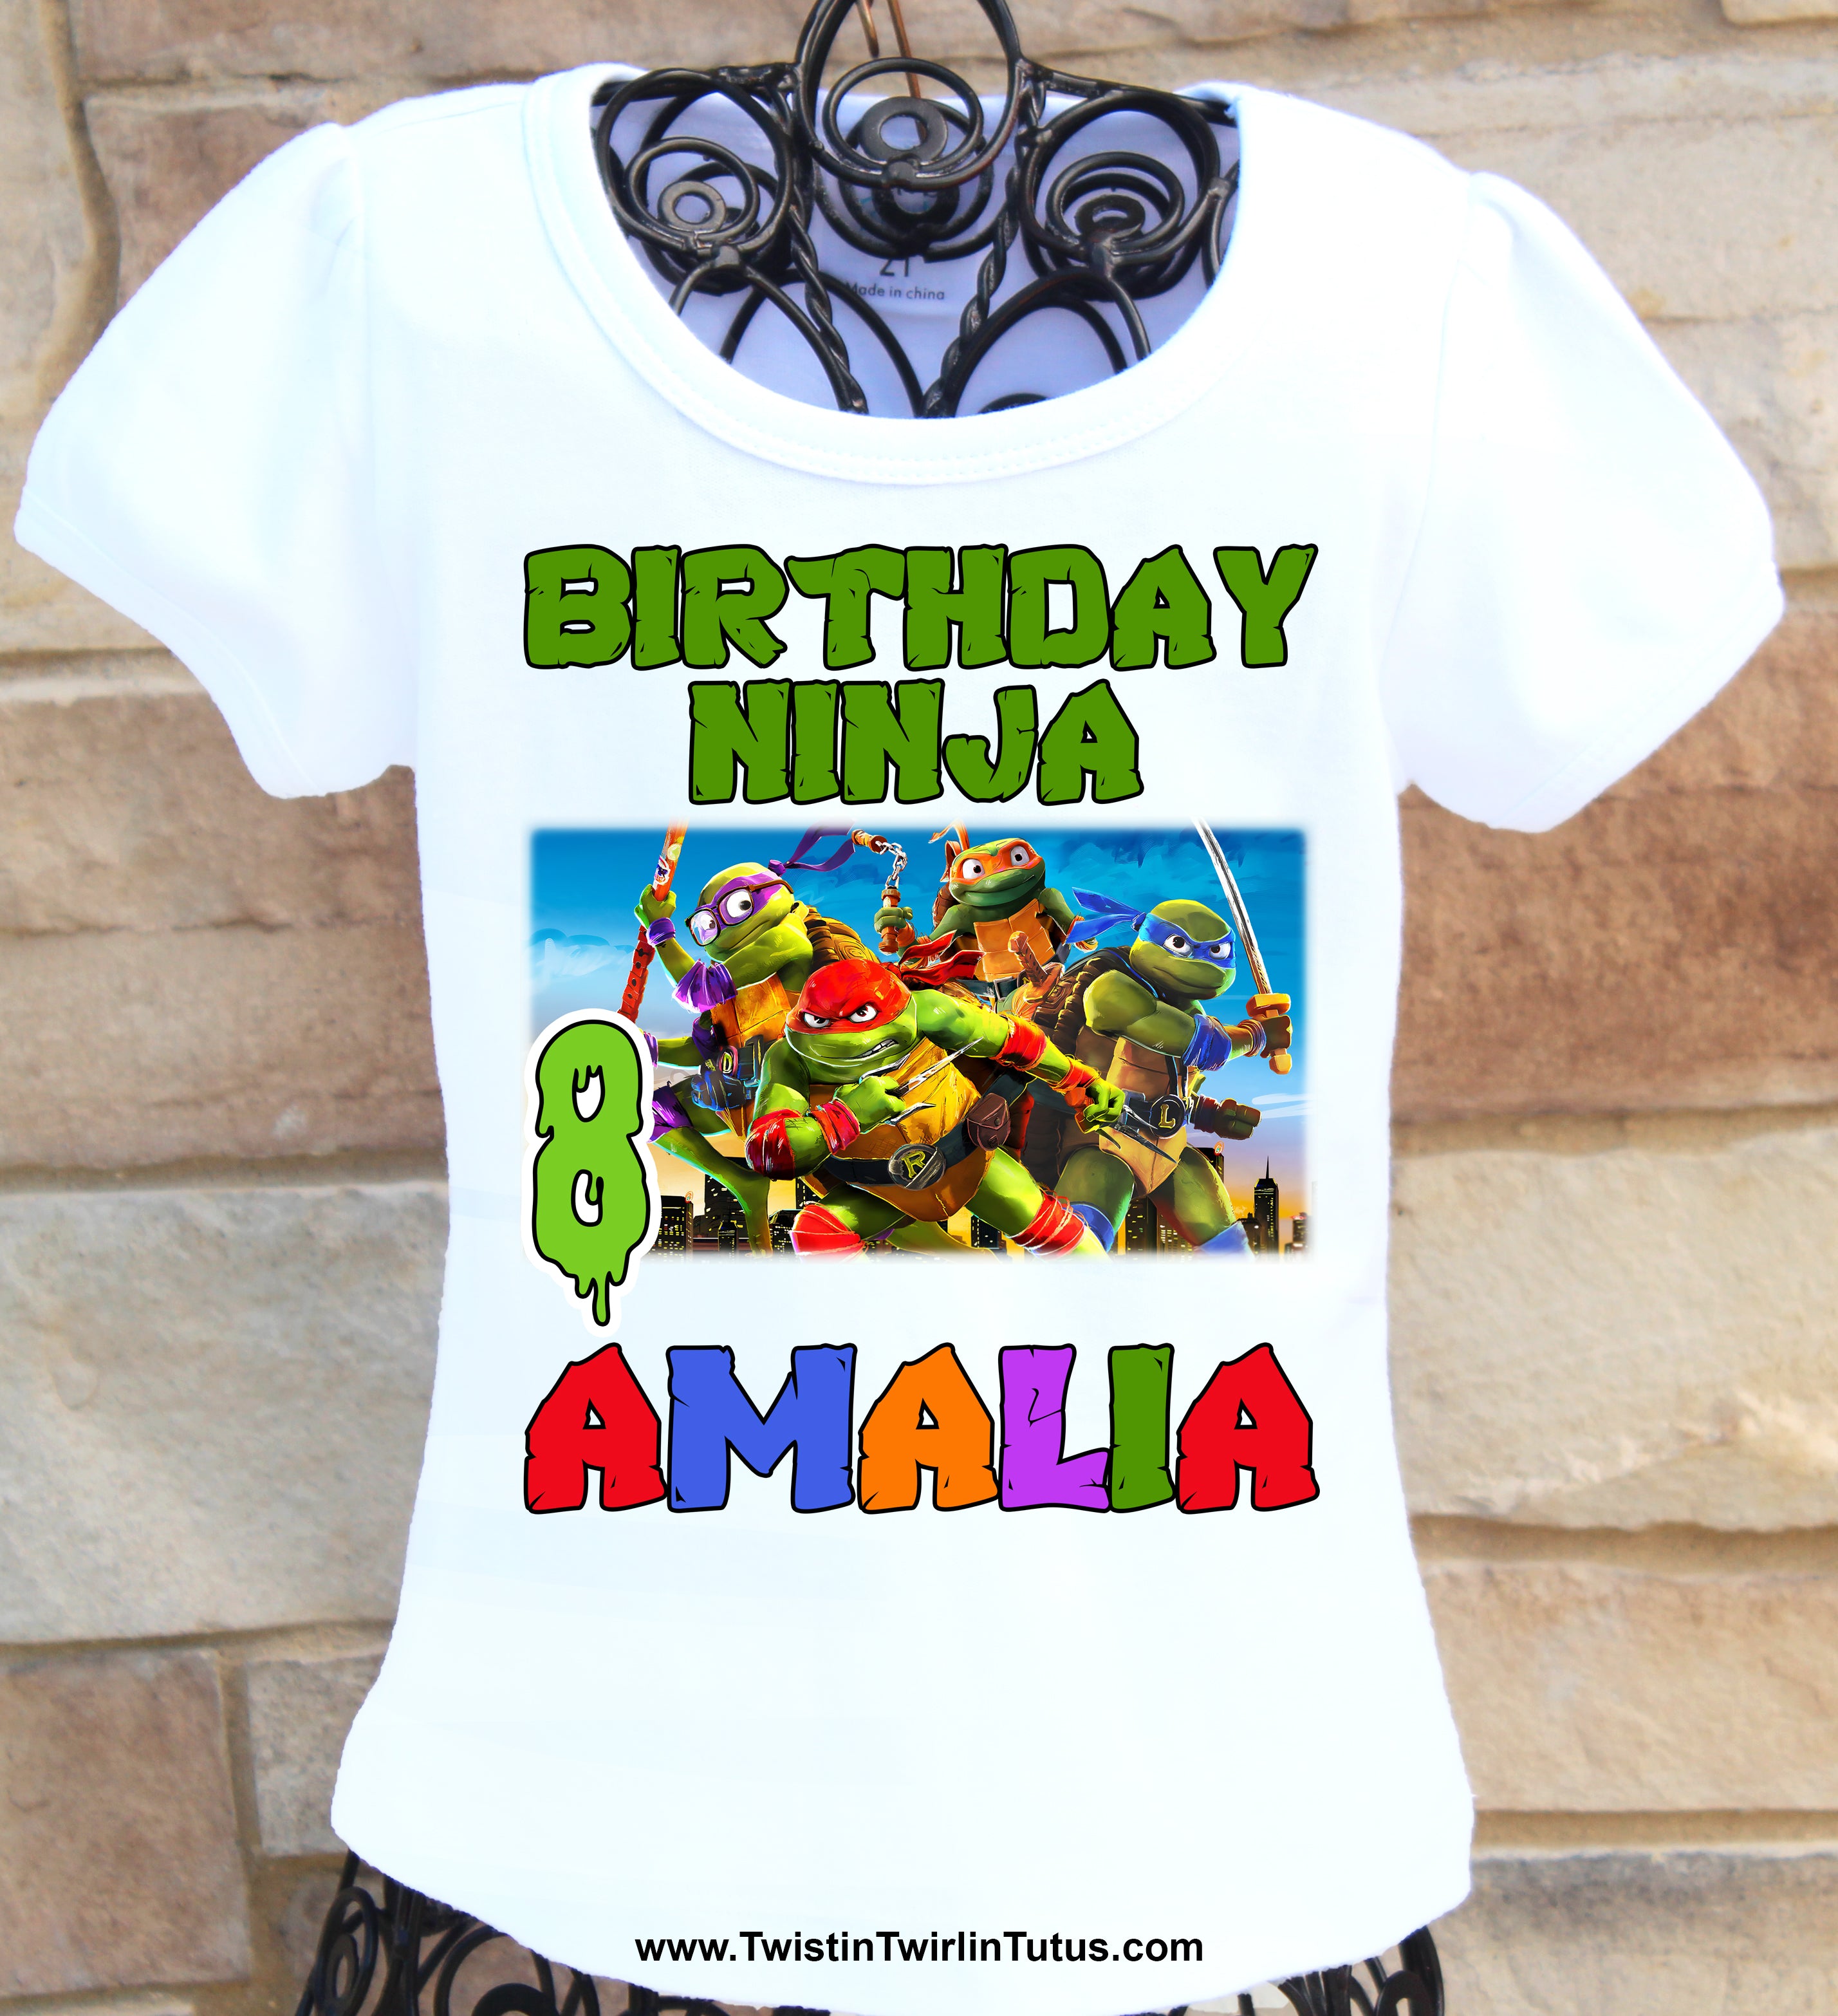 Birthday Ninja Shirt 